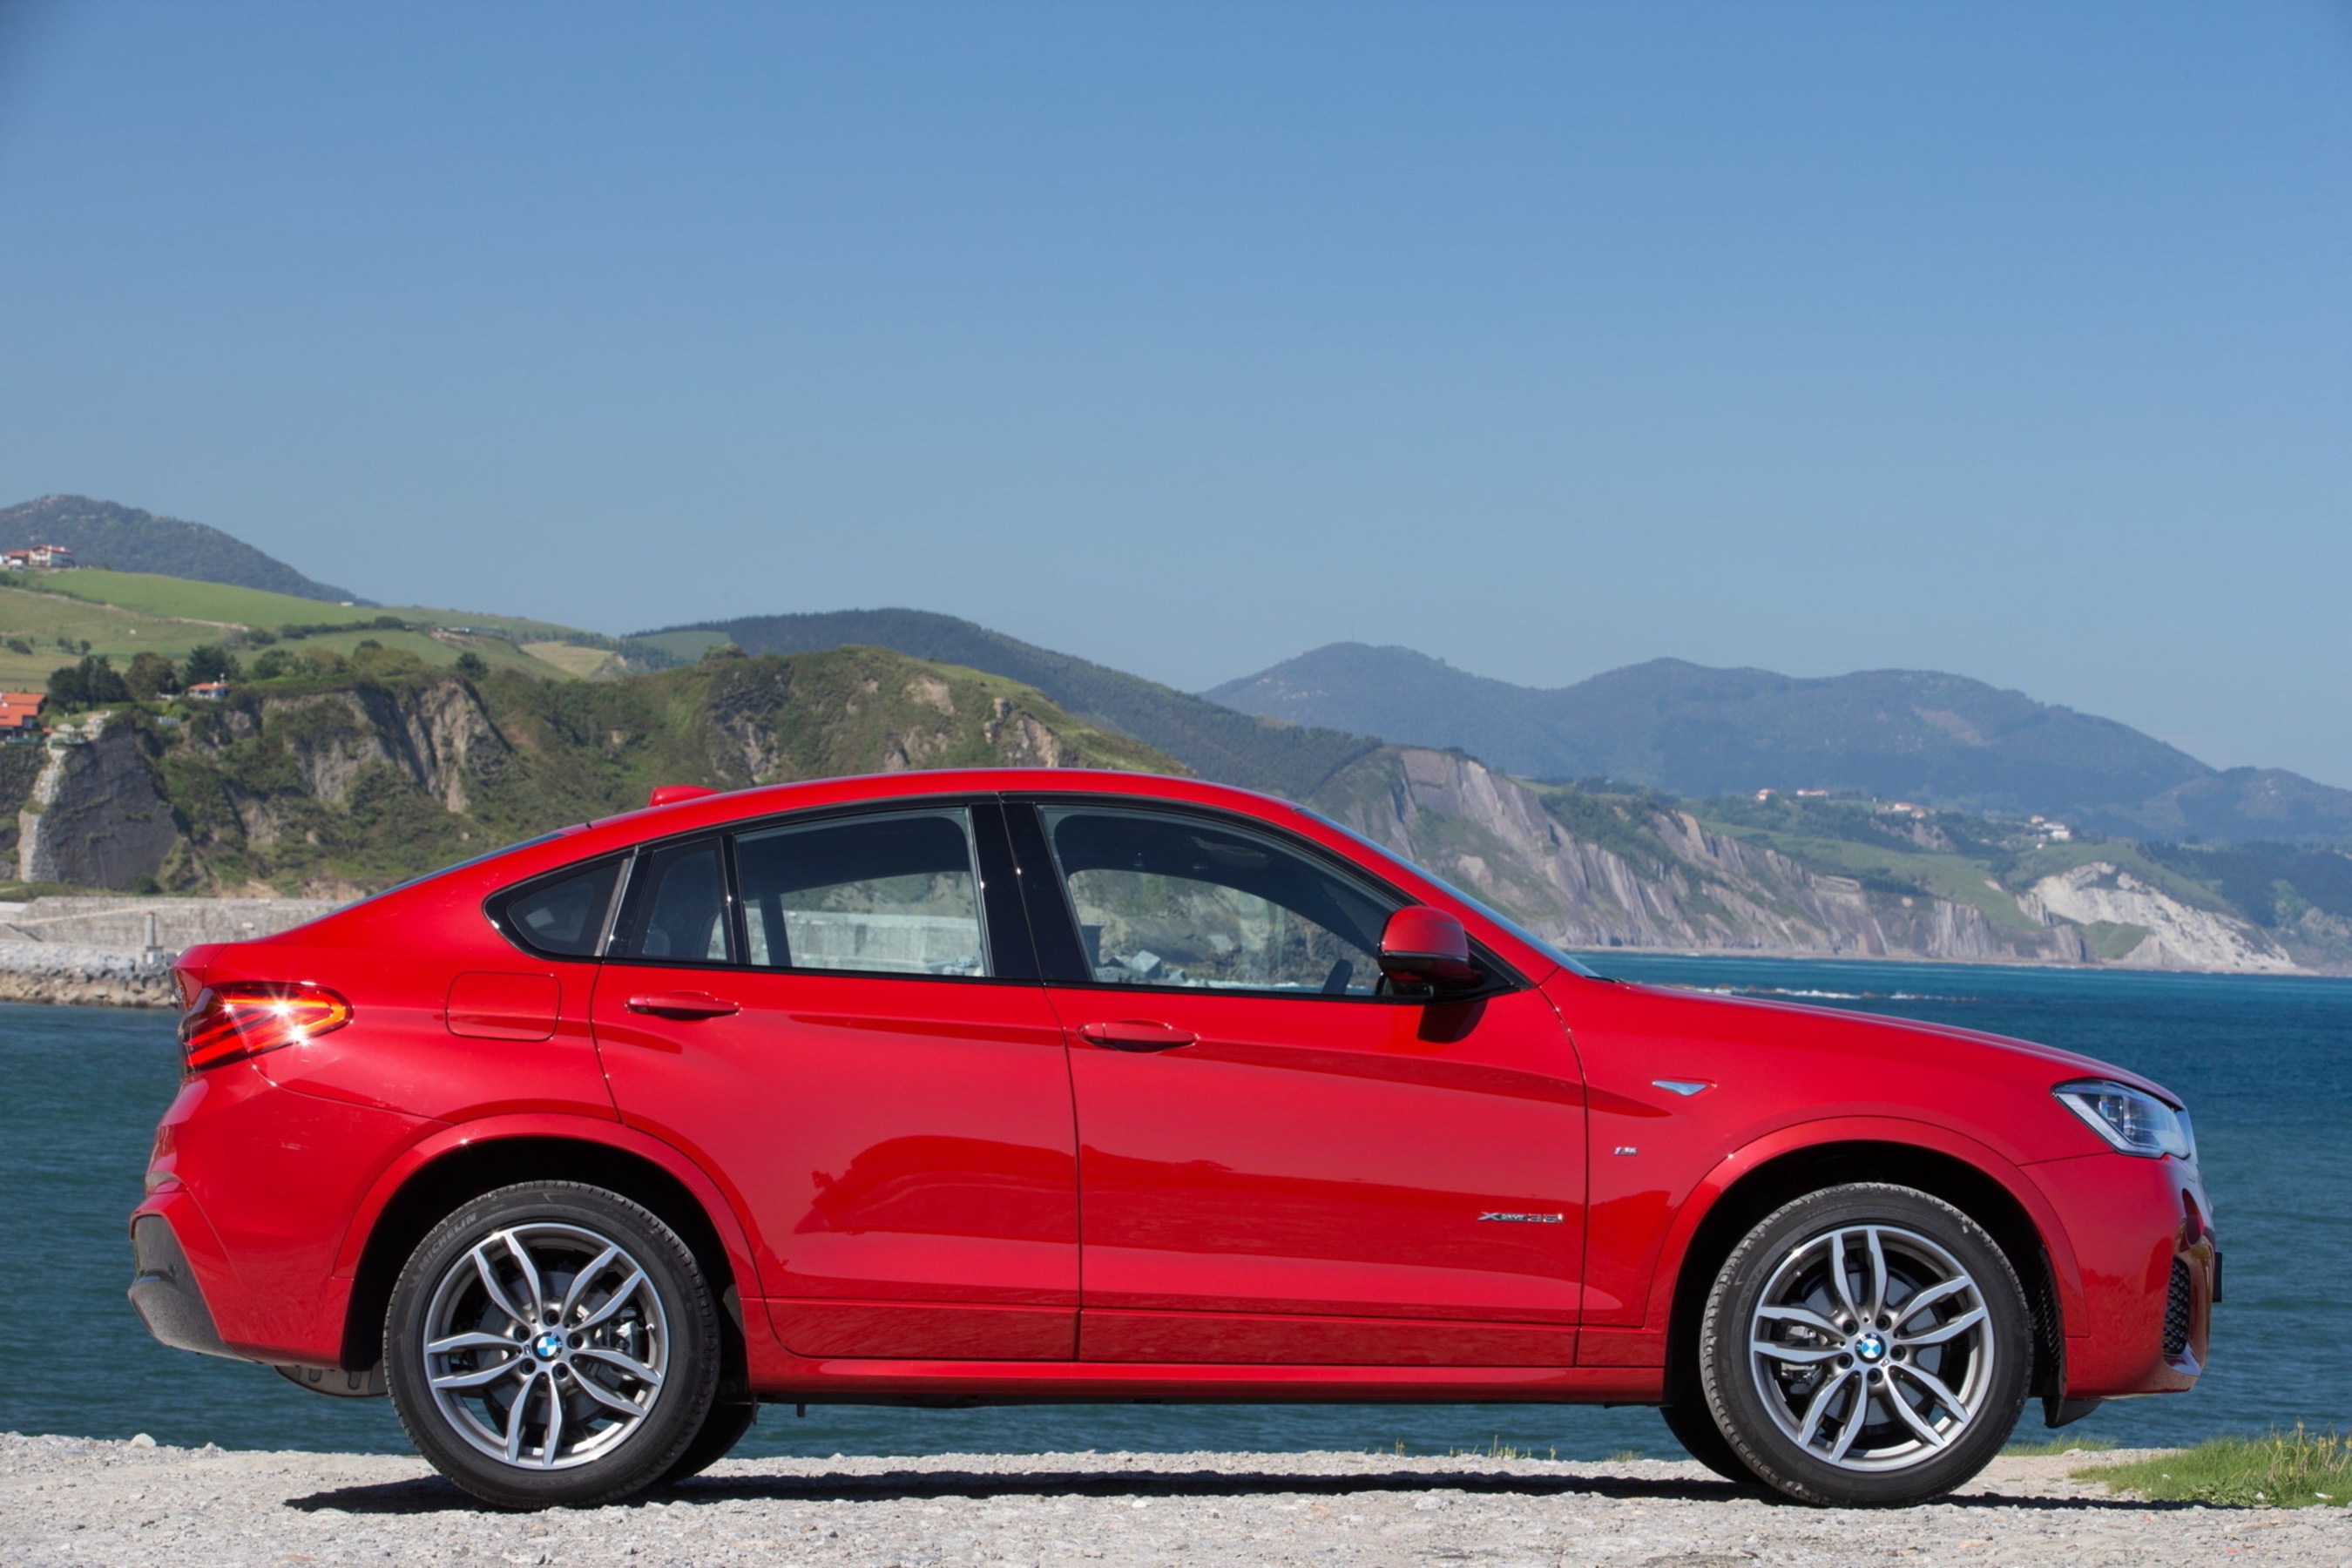 The BMW X4 saw its monthly sales jump nearly 90% in August 2015. (PRNewsFoto/BMW Group) (PRNewsFoto/BMW Group)